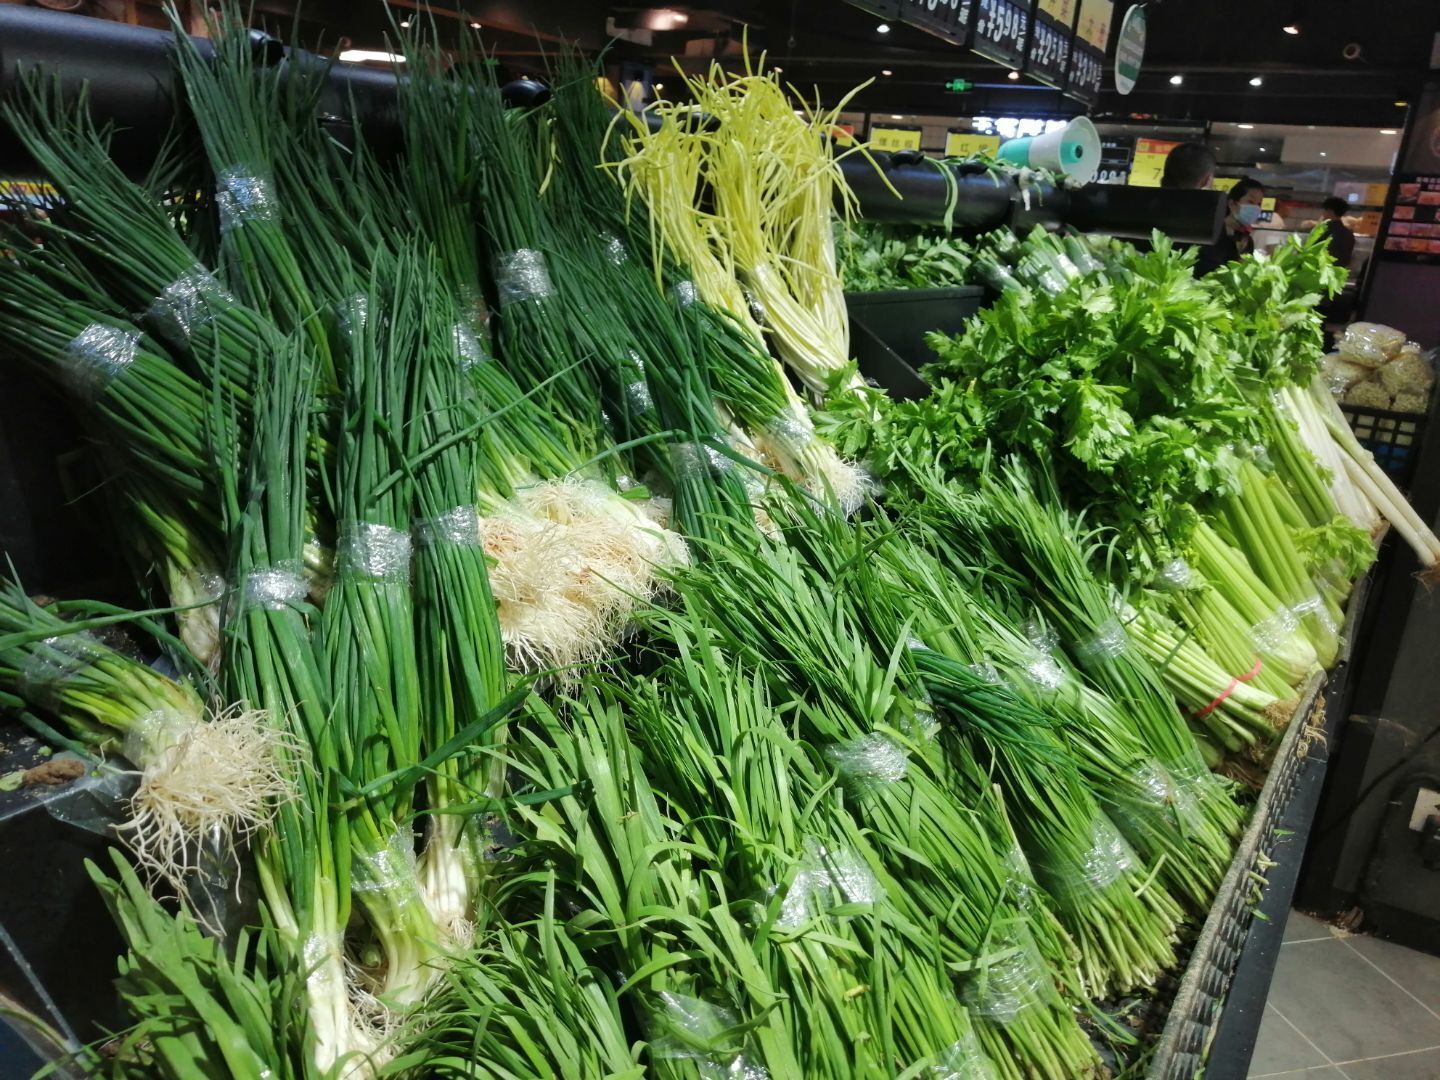 陕西蔬菜价格出现“五连降” 主要副食品价格稳中略涨